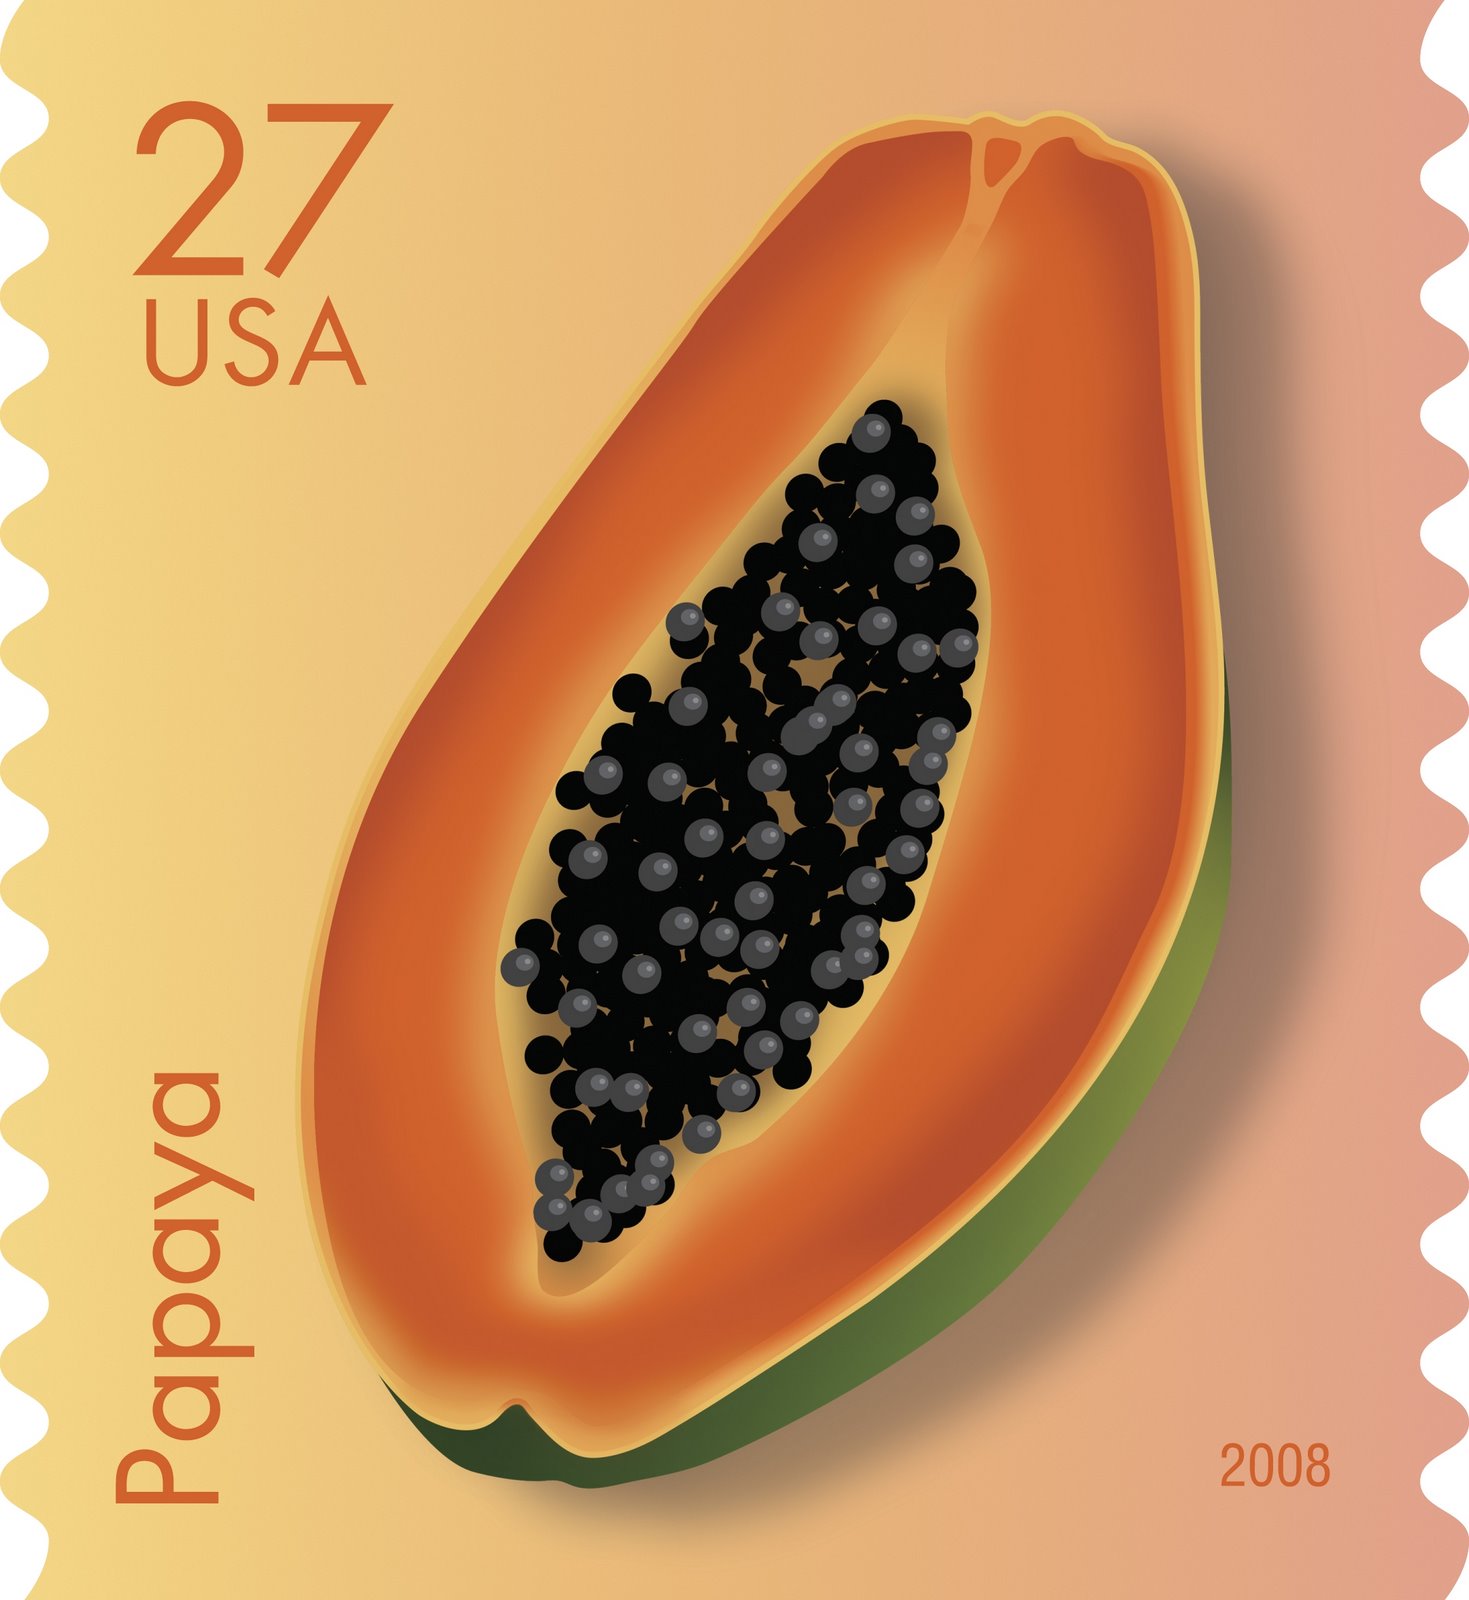 [Sello+USA+Papaya.jpg]